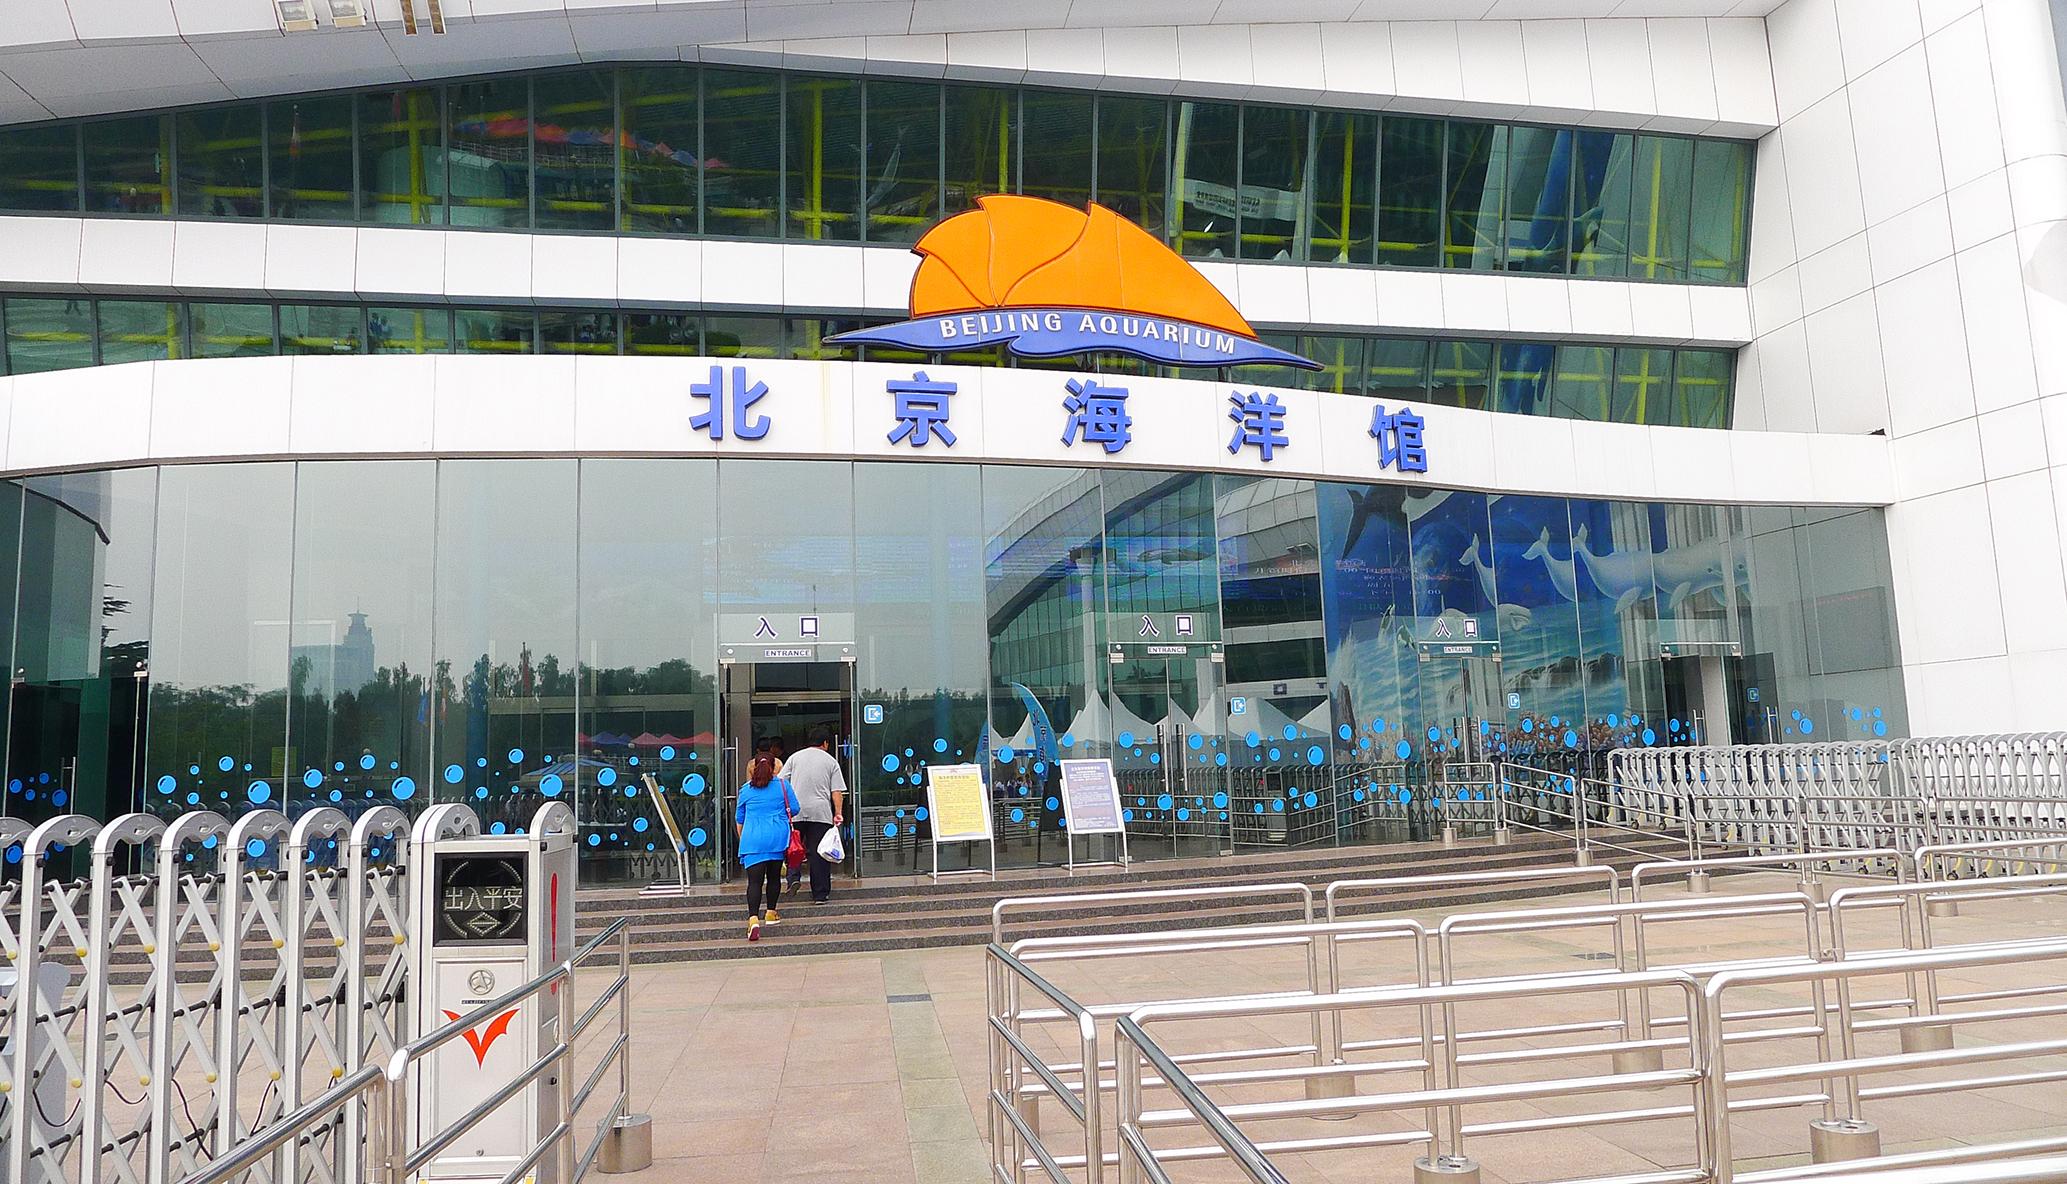 北京动物园海洋馆攻略图片